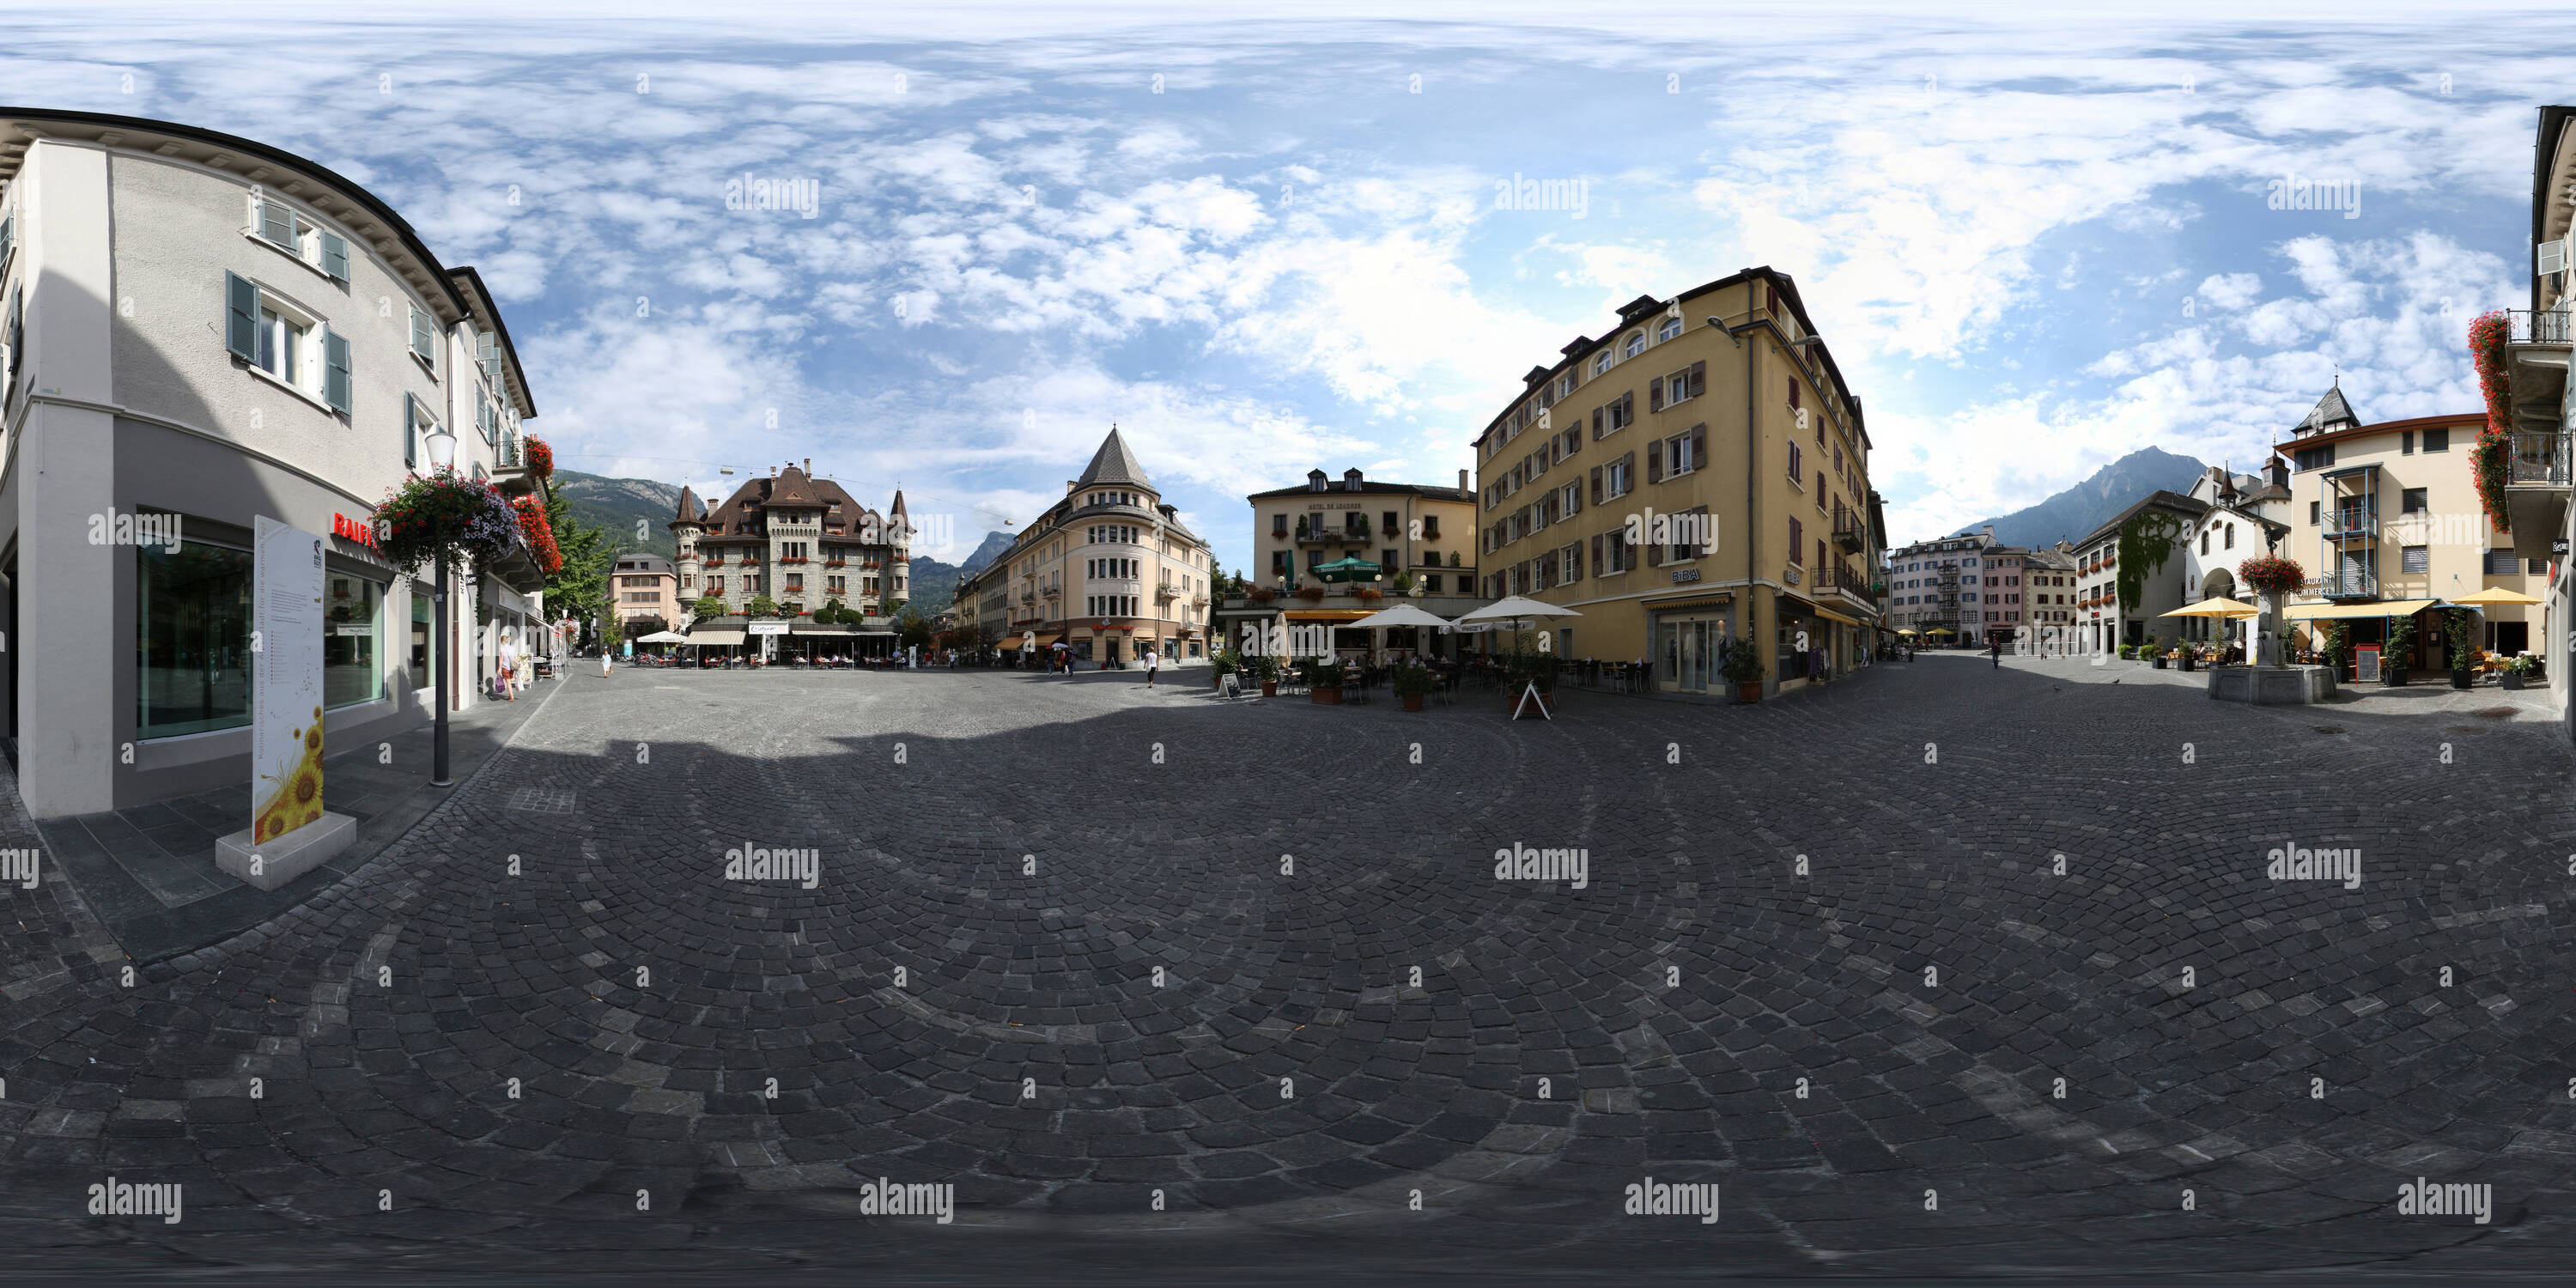 360 degree panoramic view of Sebastiansplatz